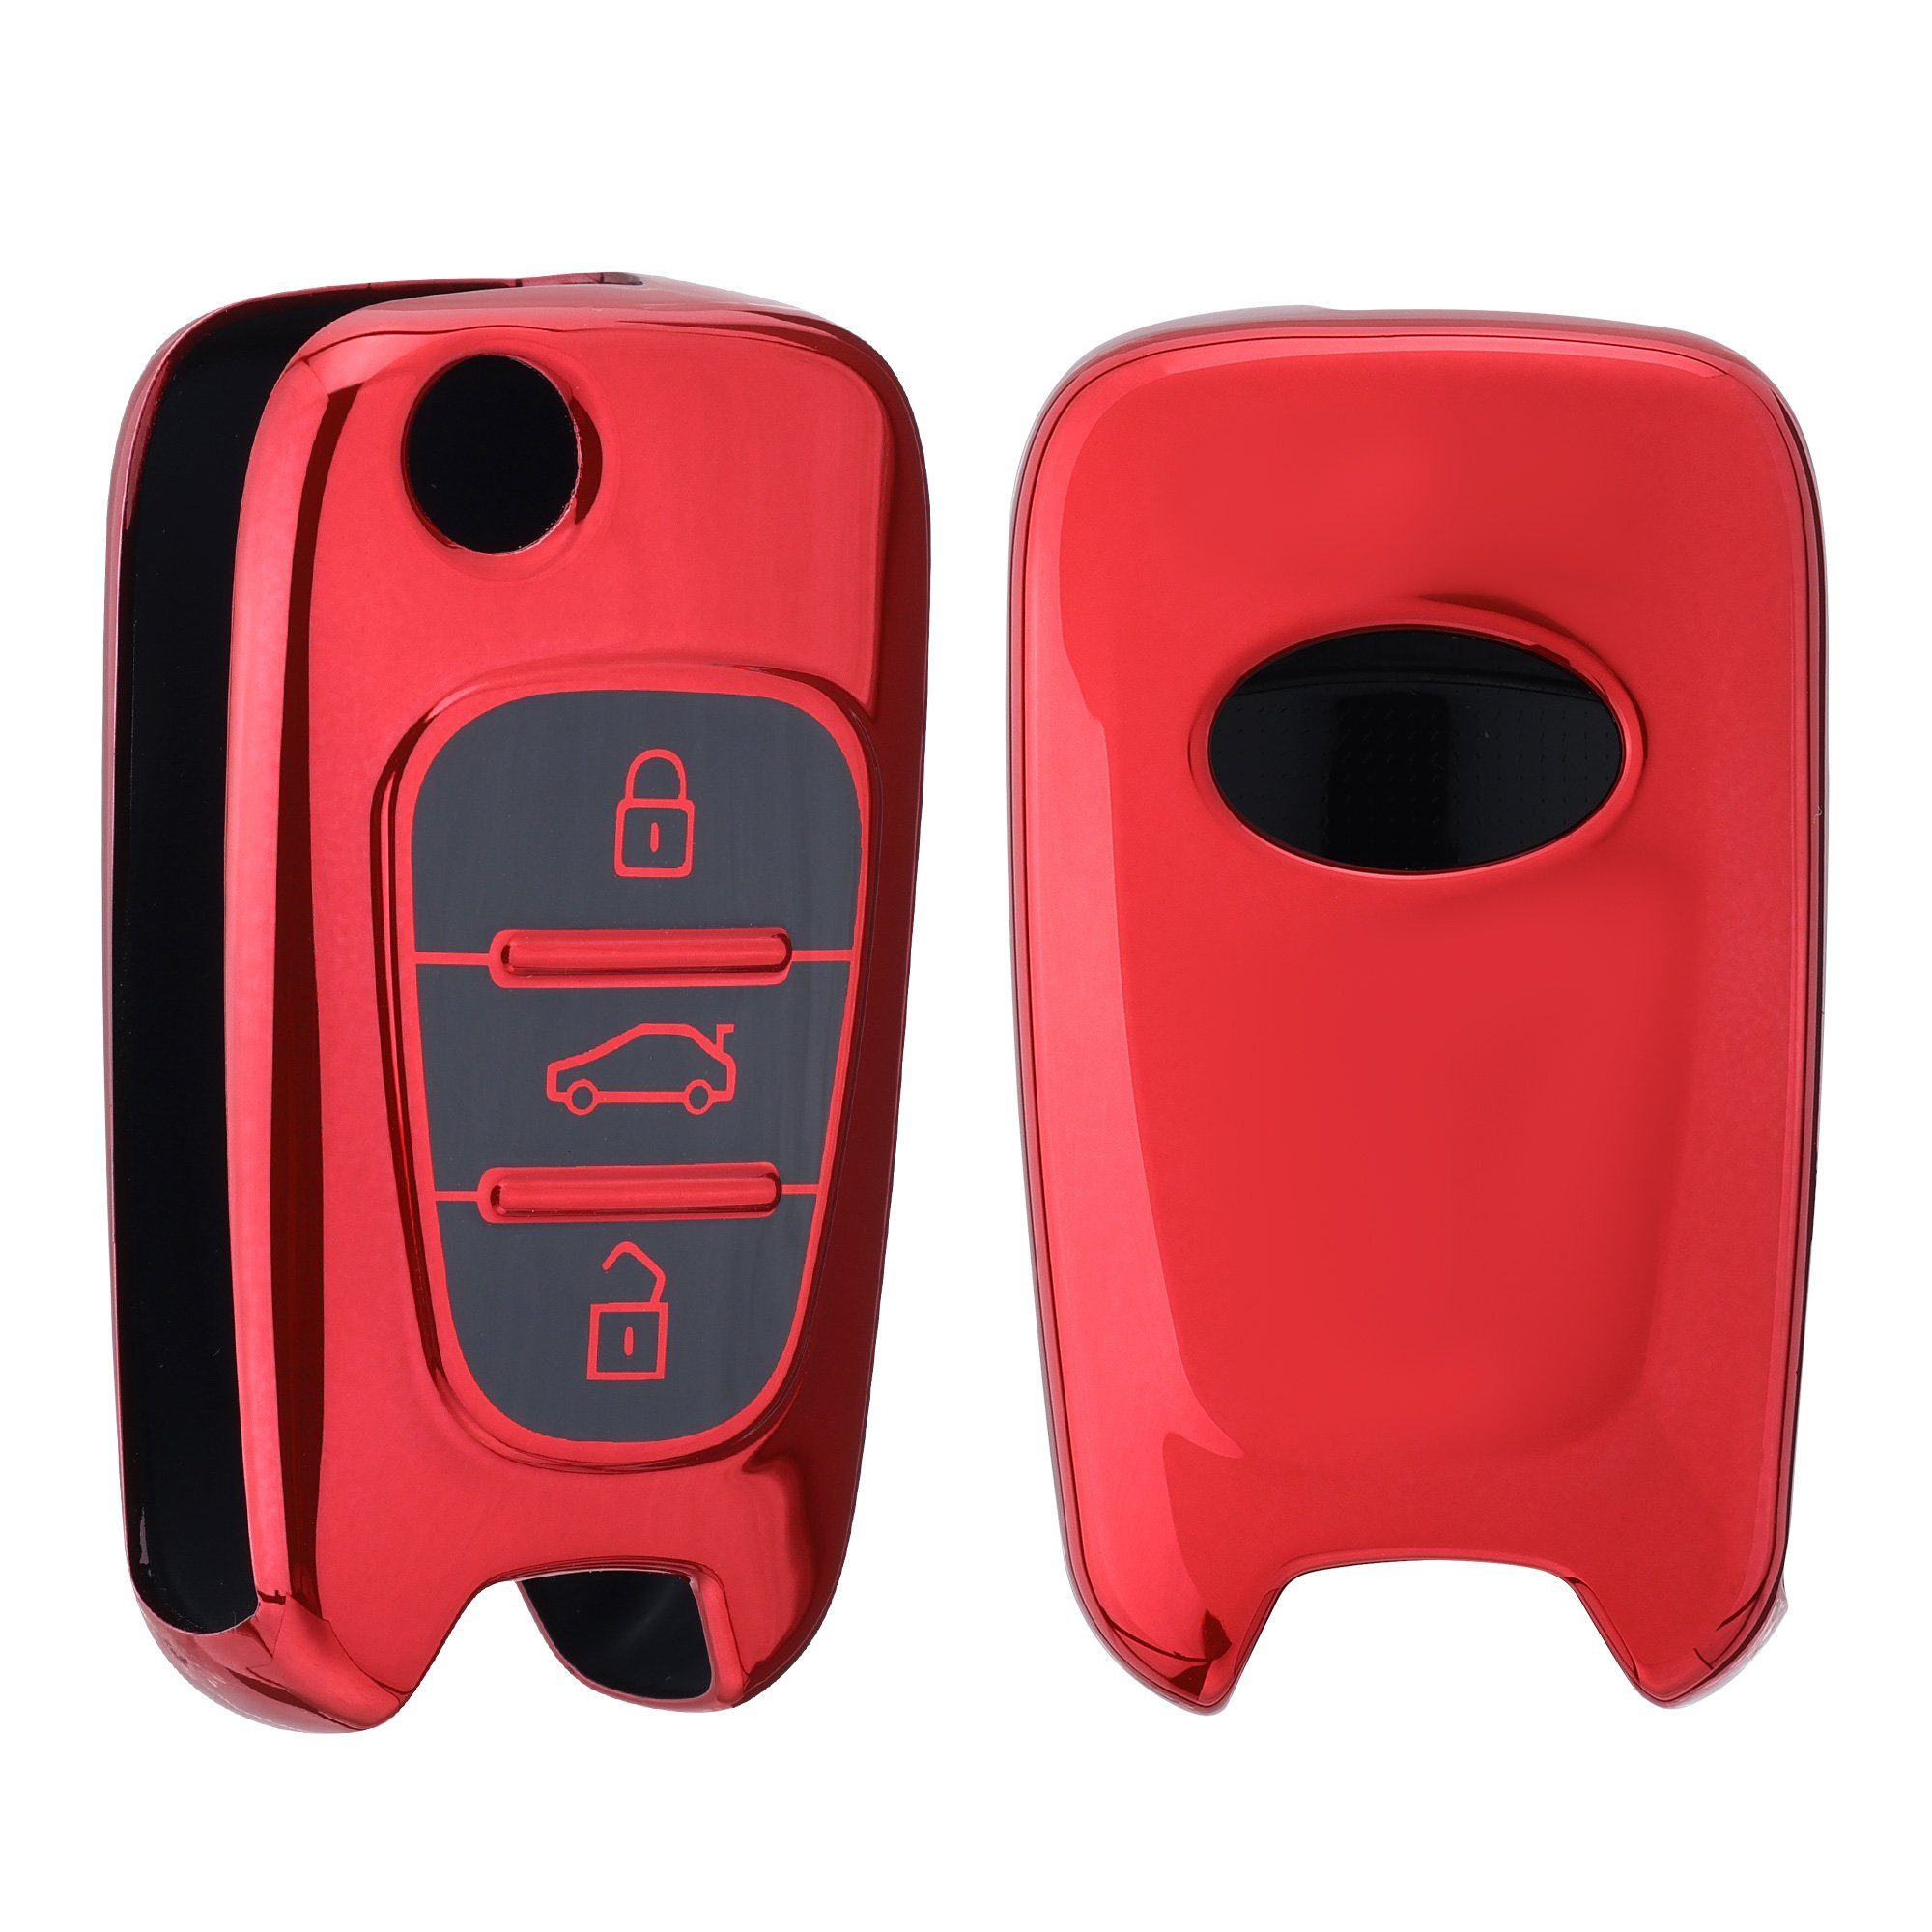 Hyundai, Case Autoschlüssel Hochglanz Rot Silikon Cover Schlüssel für Schlüsselhülle kwmobile Schlüsseltasche Hülle